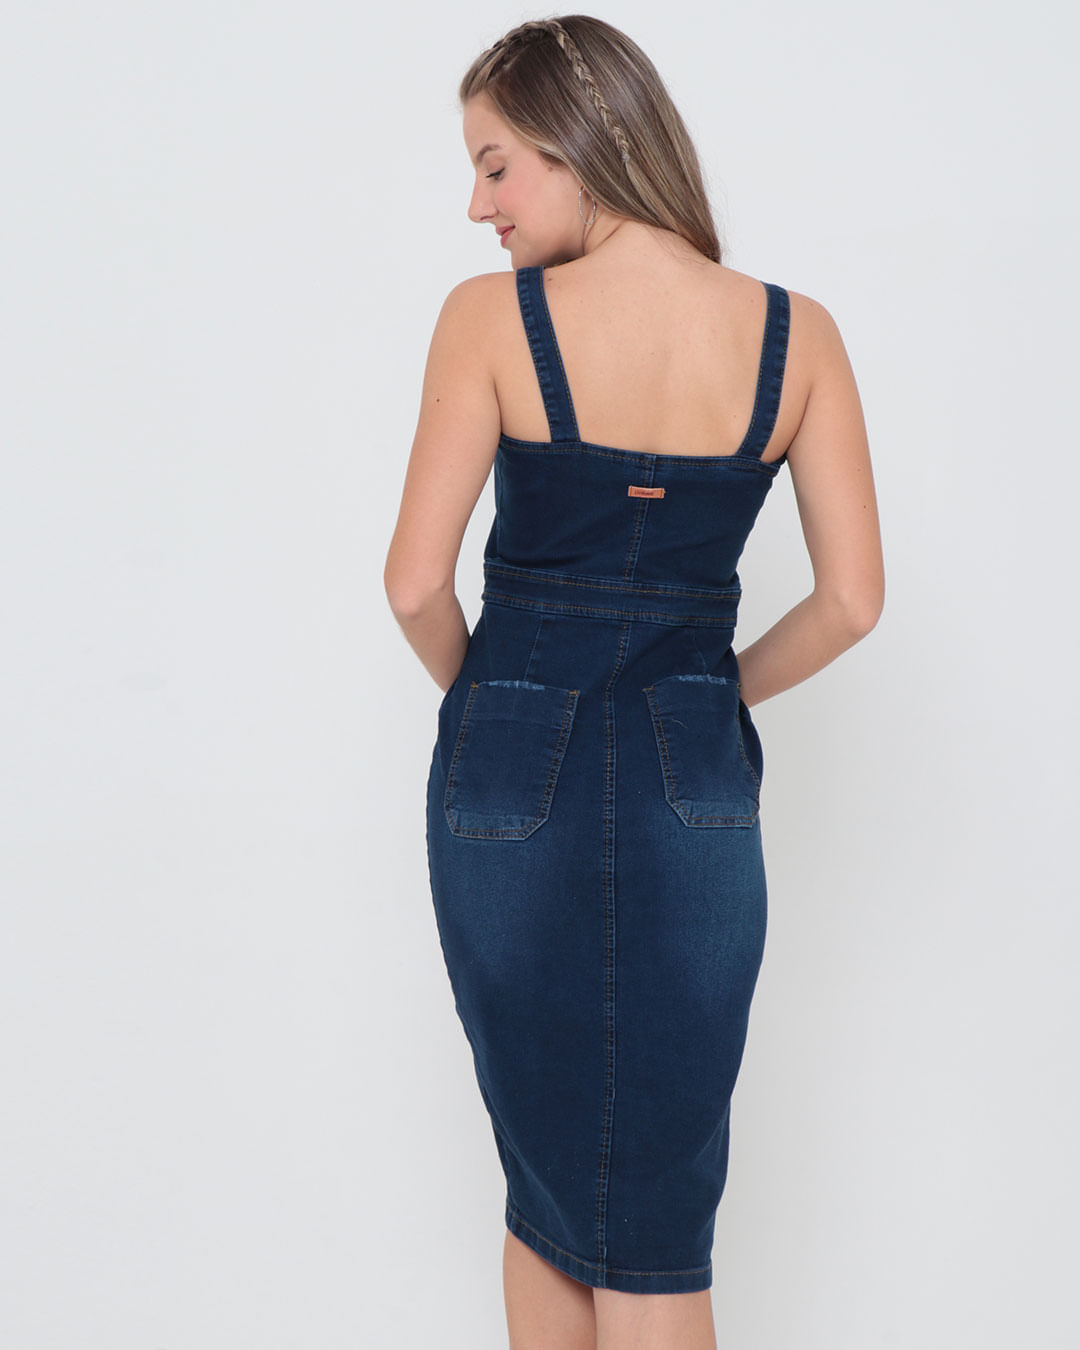 Vestido-Jeans-Ziper-Midi-Azul-Escuro